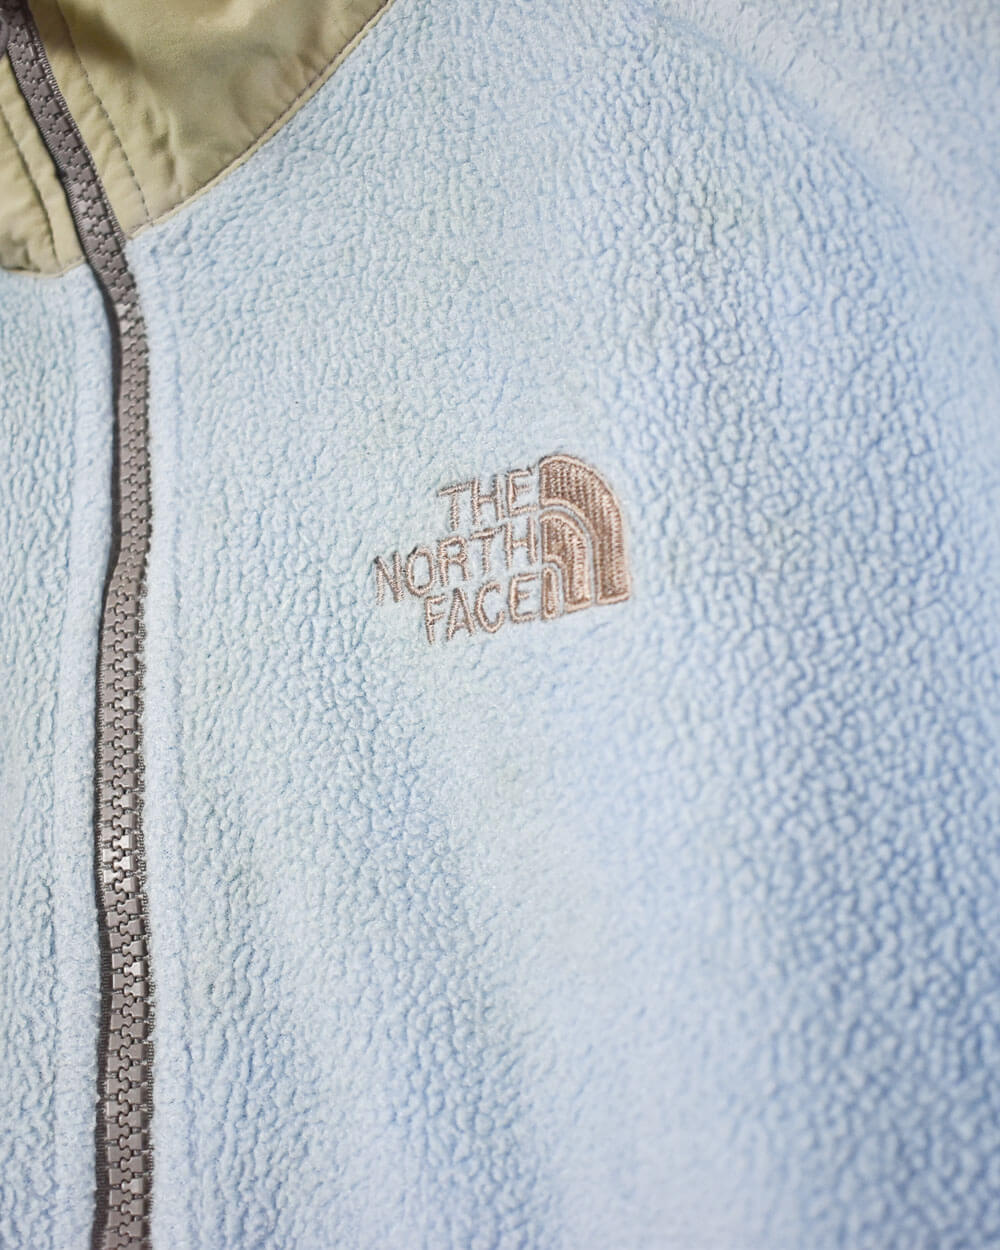 Baby The North Face Women's Zip-Through Fleece - Small 